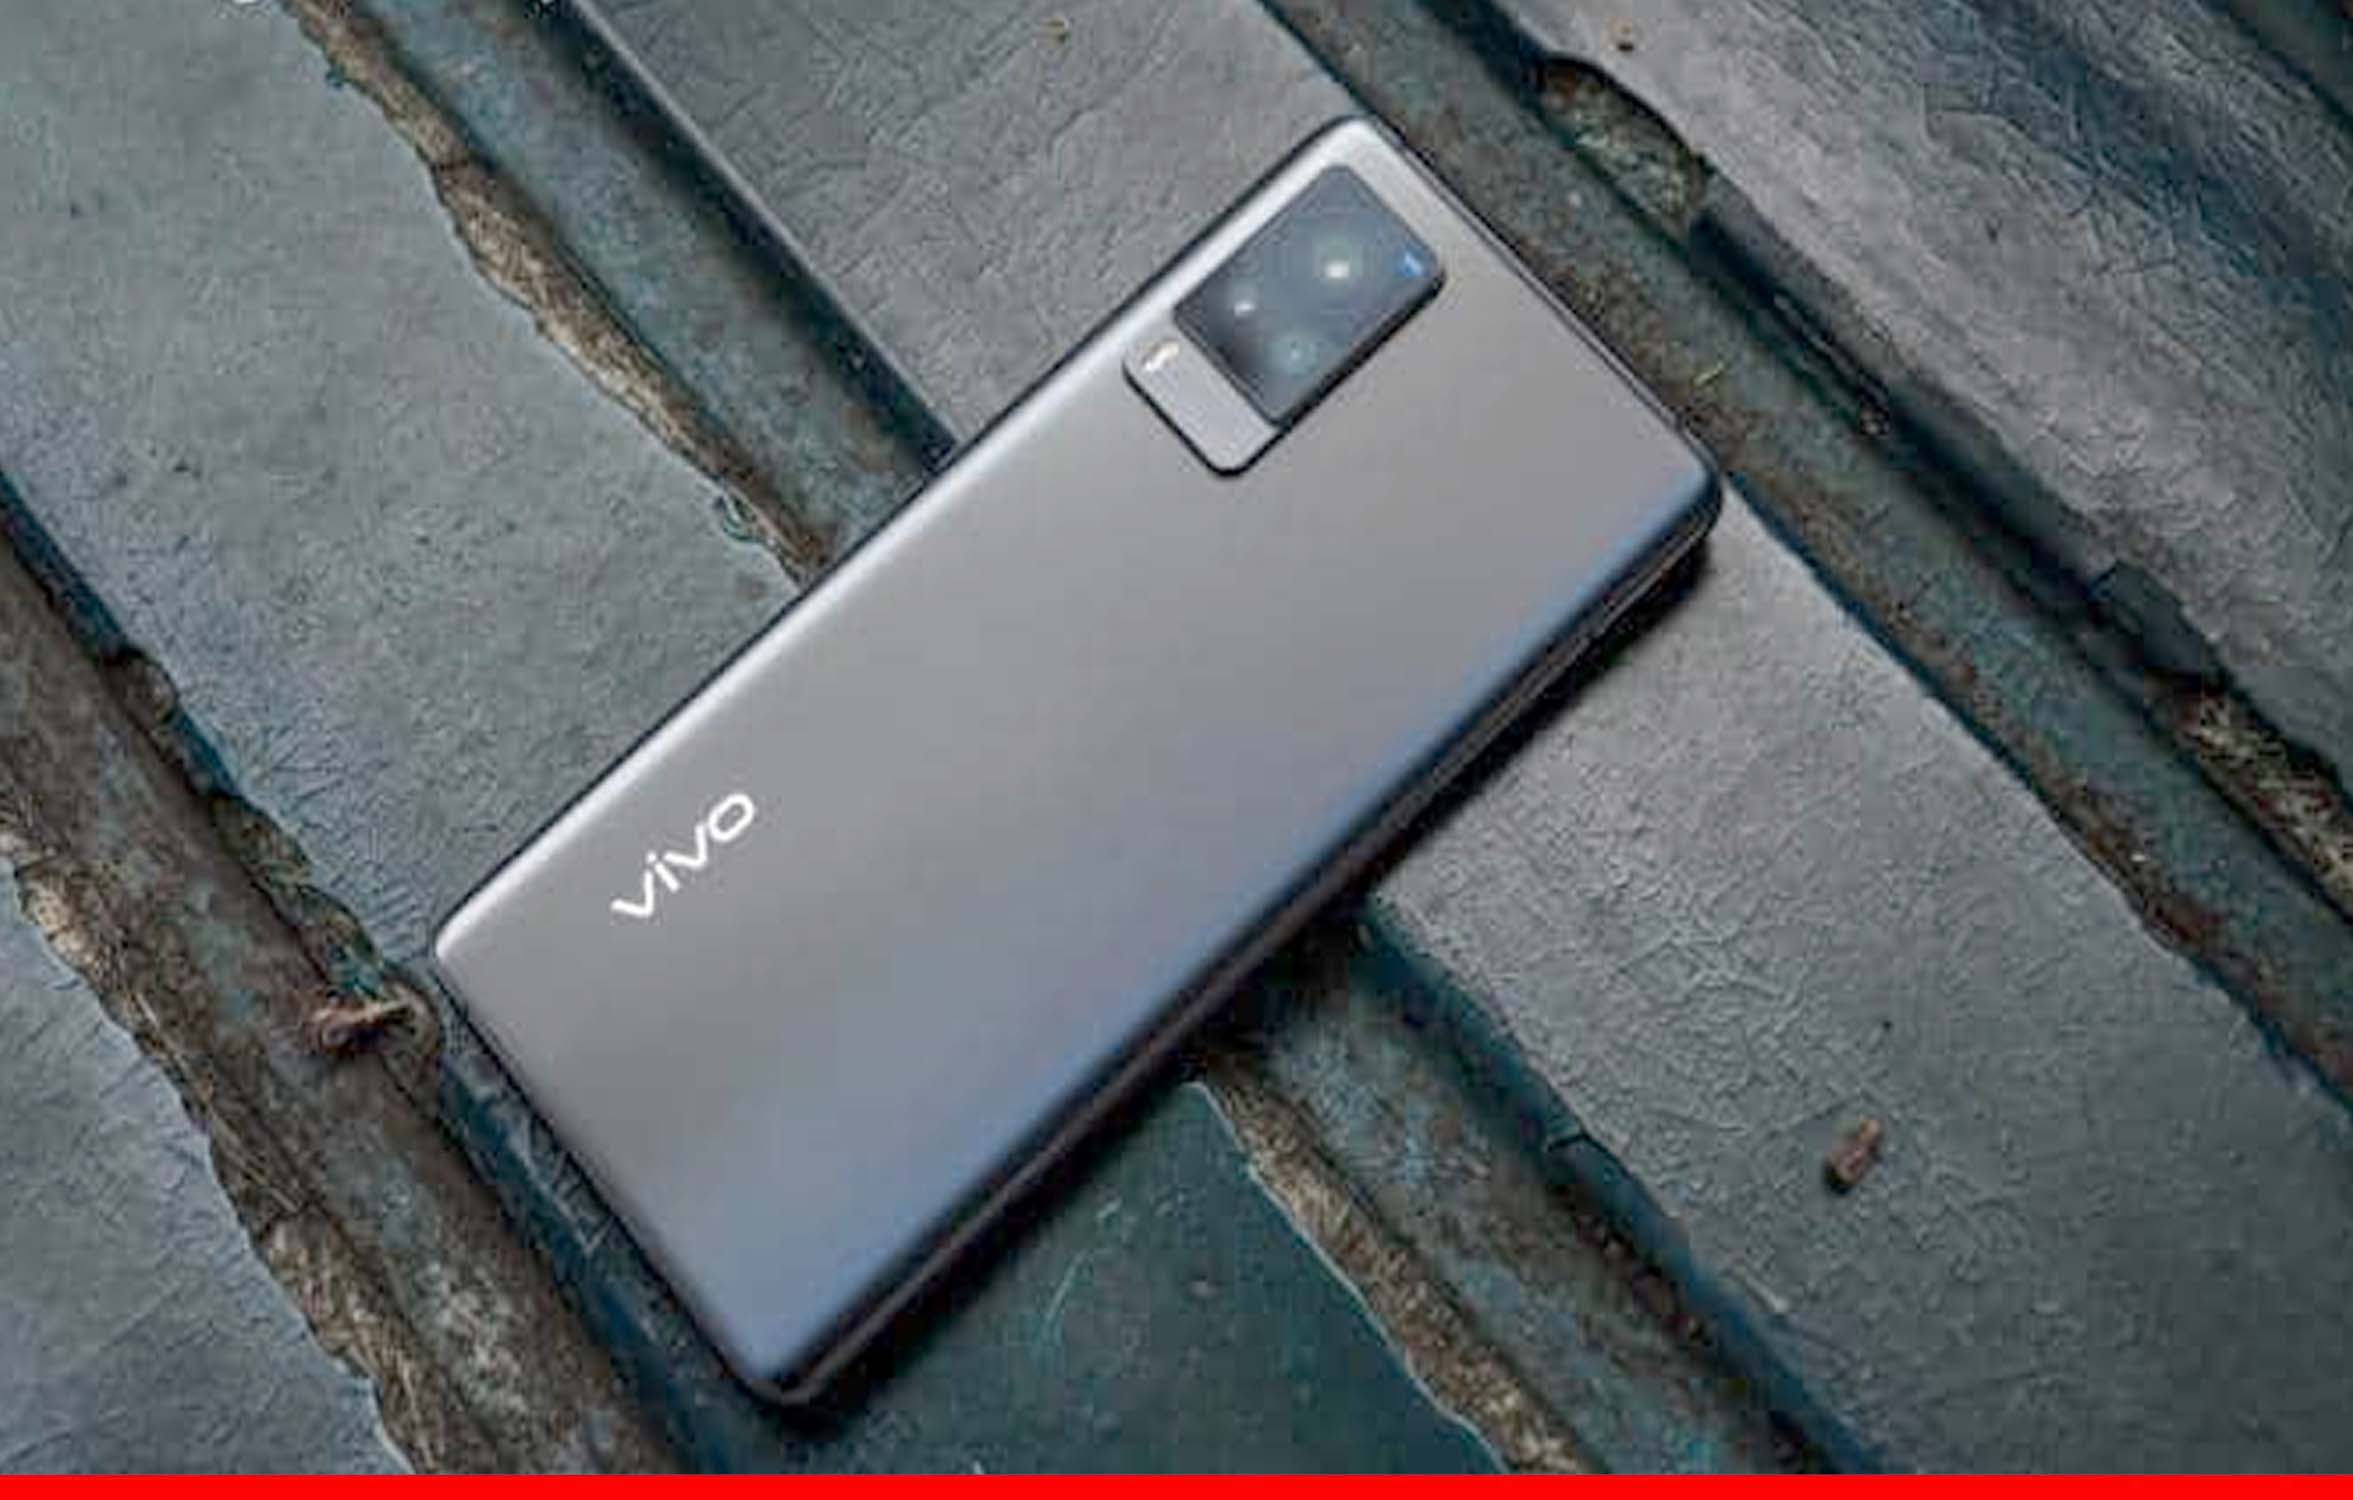 सिर्फ 101 रुपये में घर ला सकते हैं Vivo के प्रीमियम स्मार्टफोन